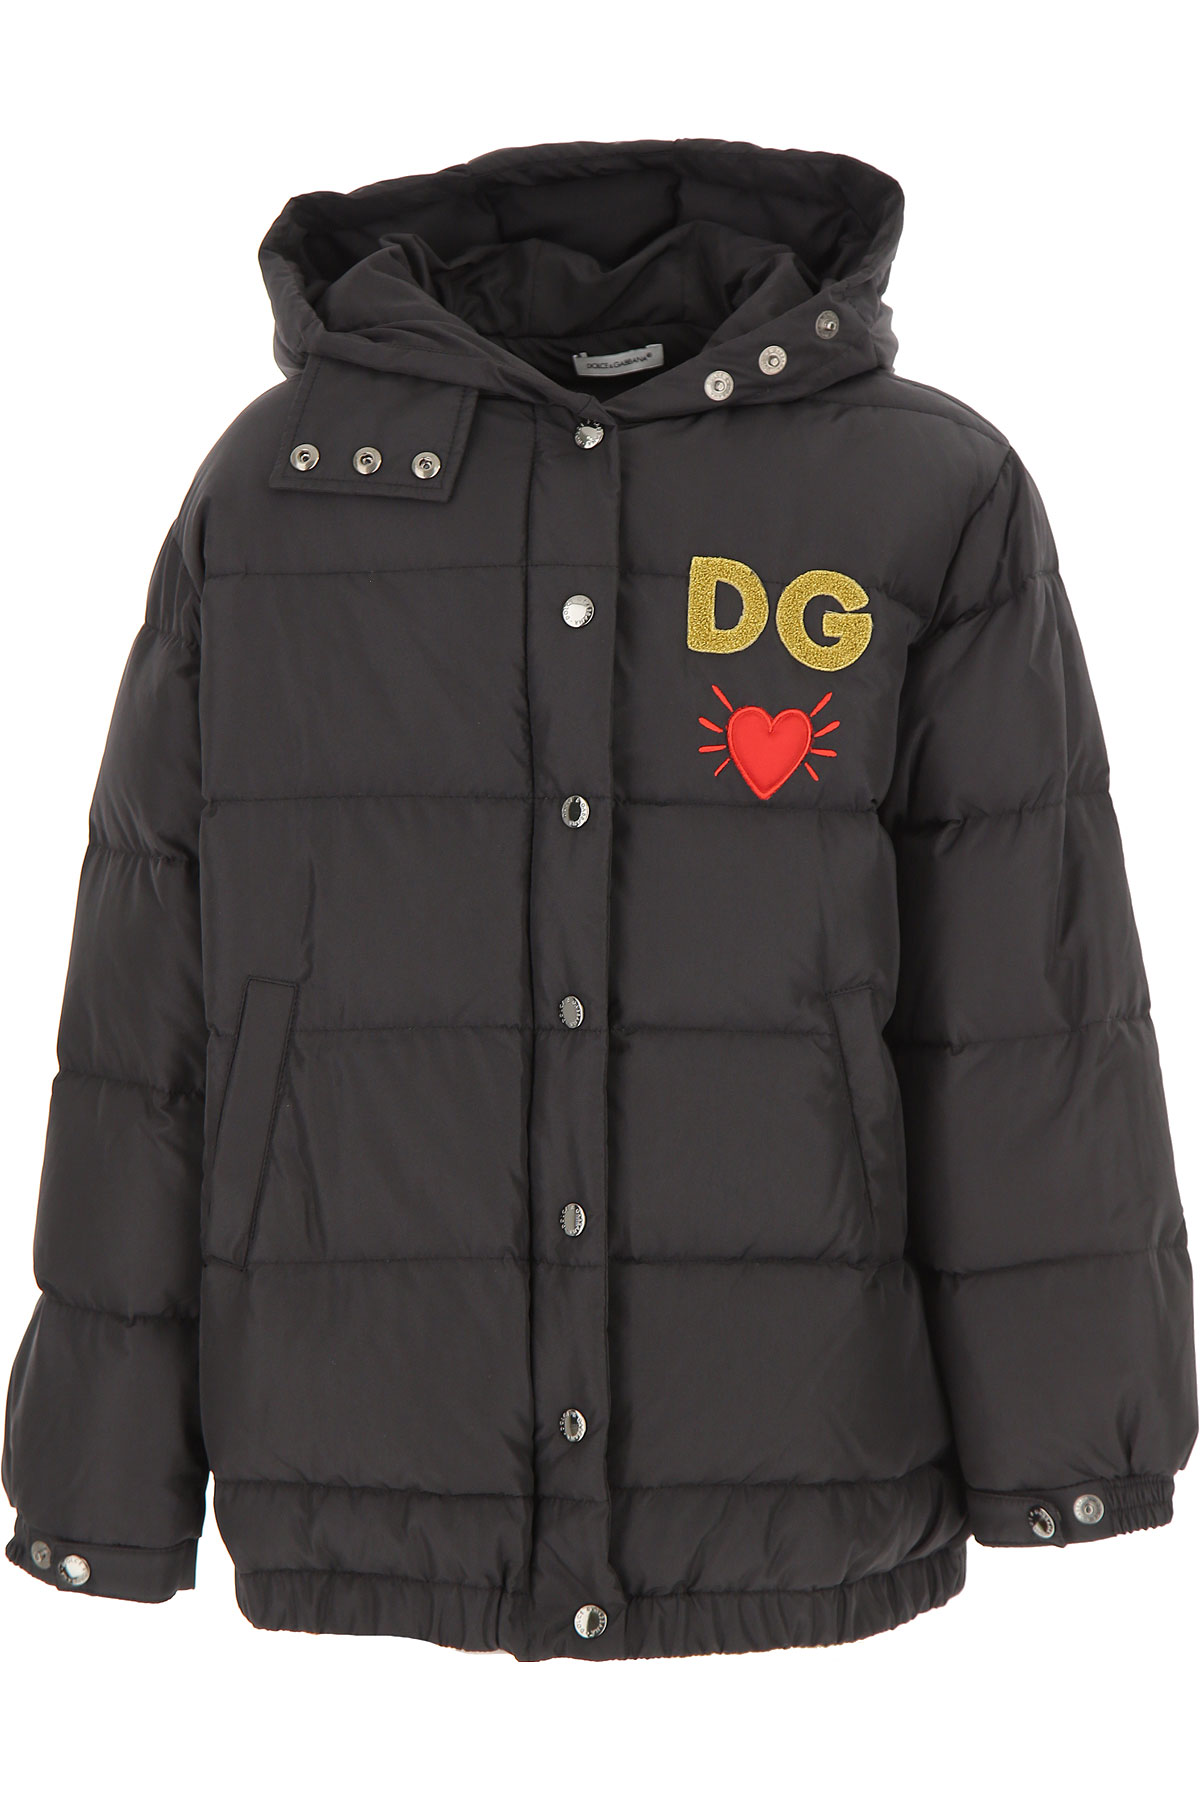 Dolce & Gabbana Kinder Daunen Jacke für Mädchen, Soft Shell Ski Jacken Günstig im Sale, Schwarz, Polyester, 2017, 10Y 12Y 8Y